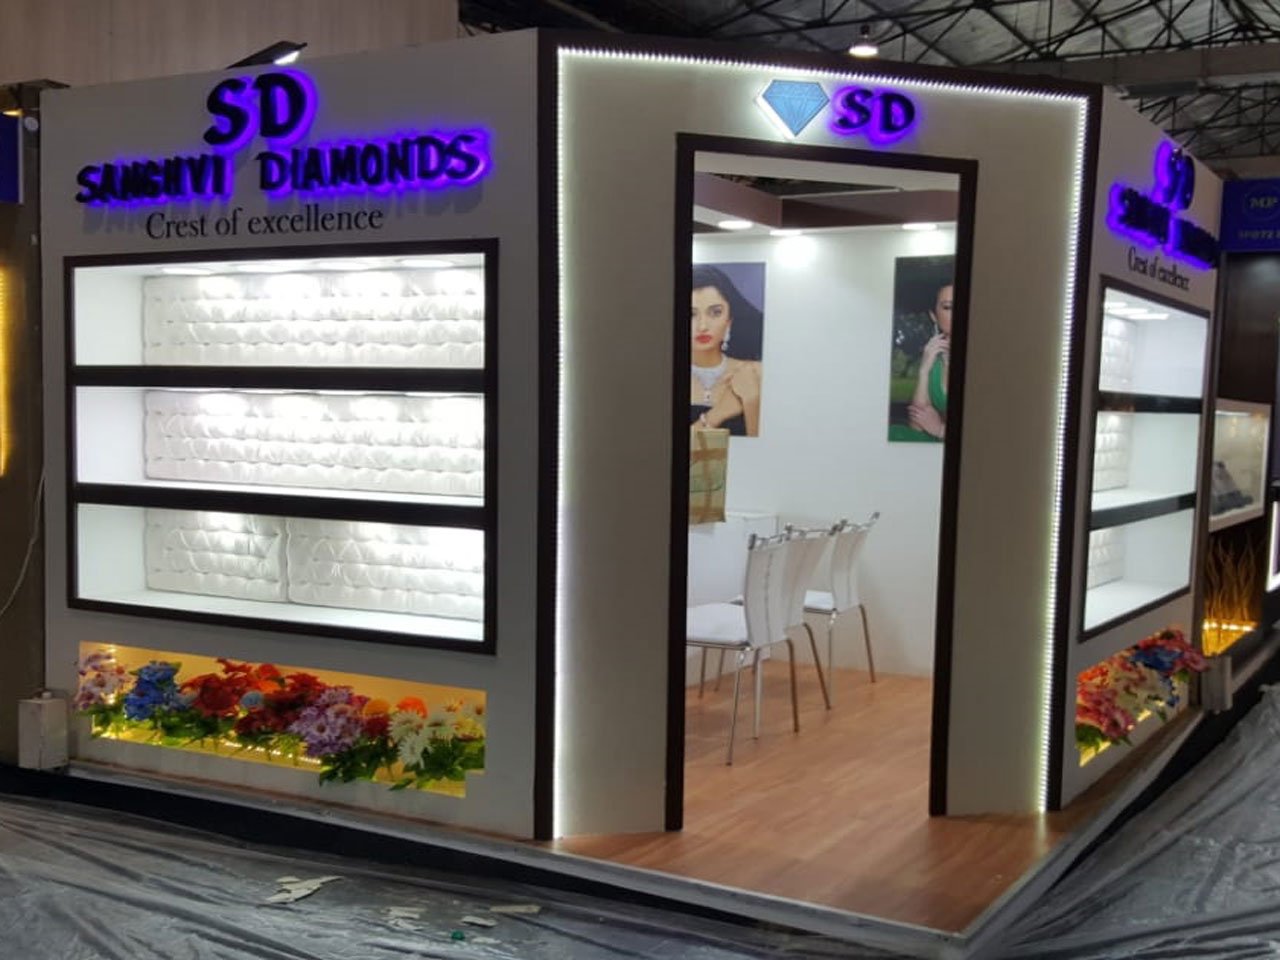 SD Diamonds